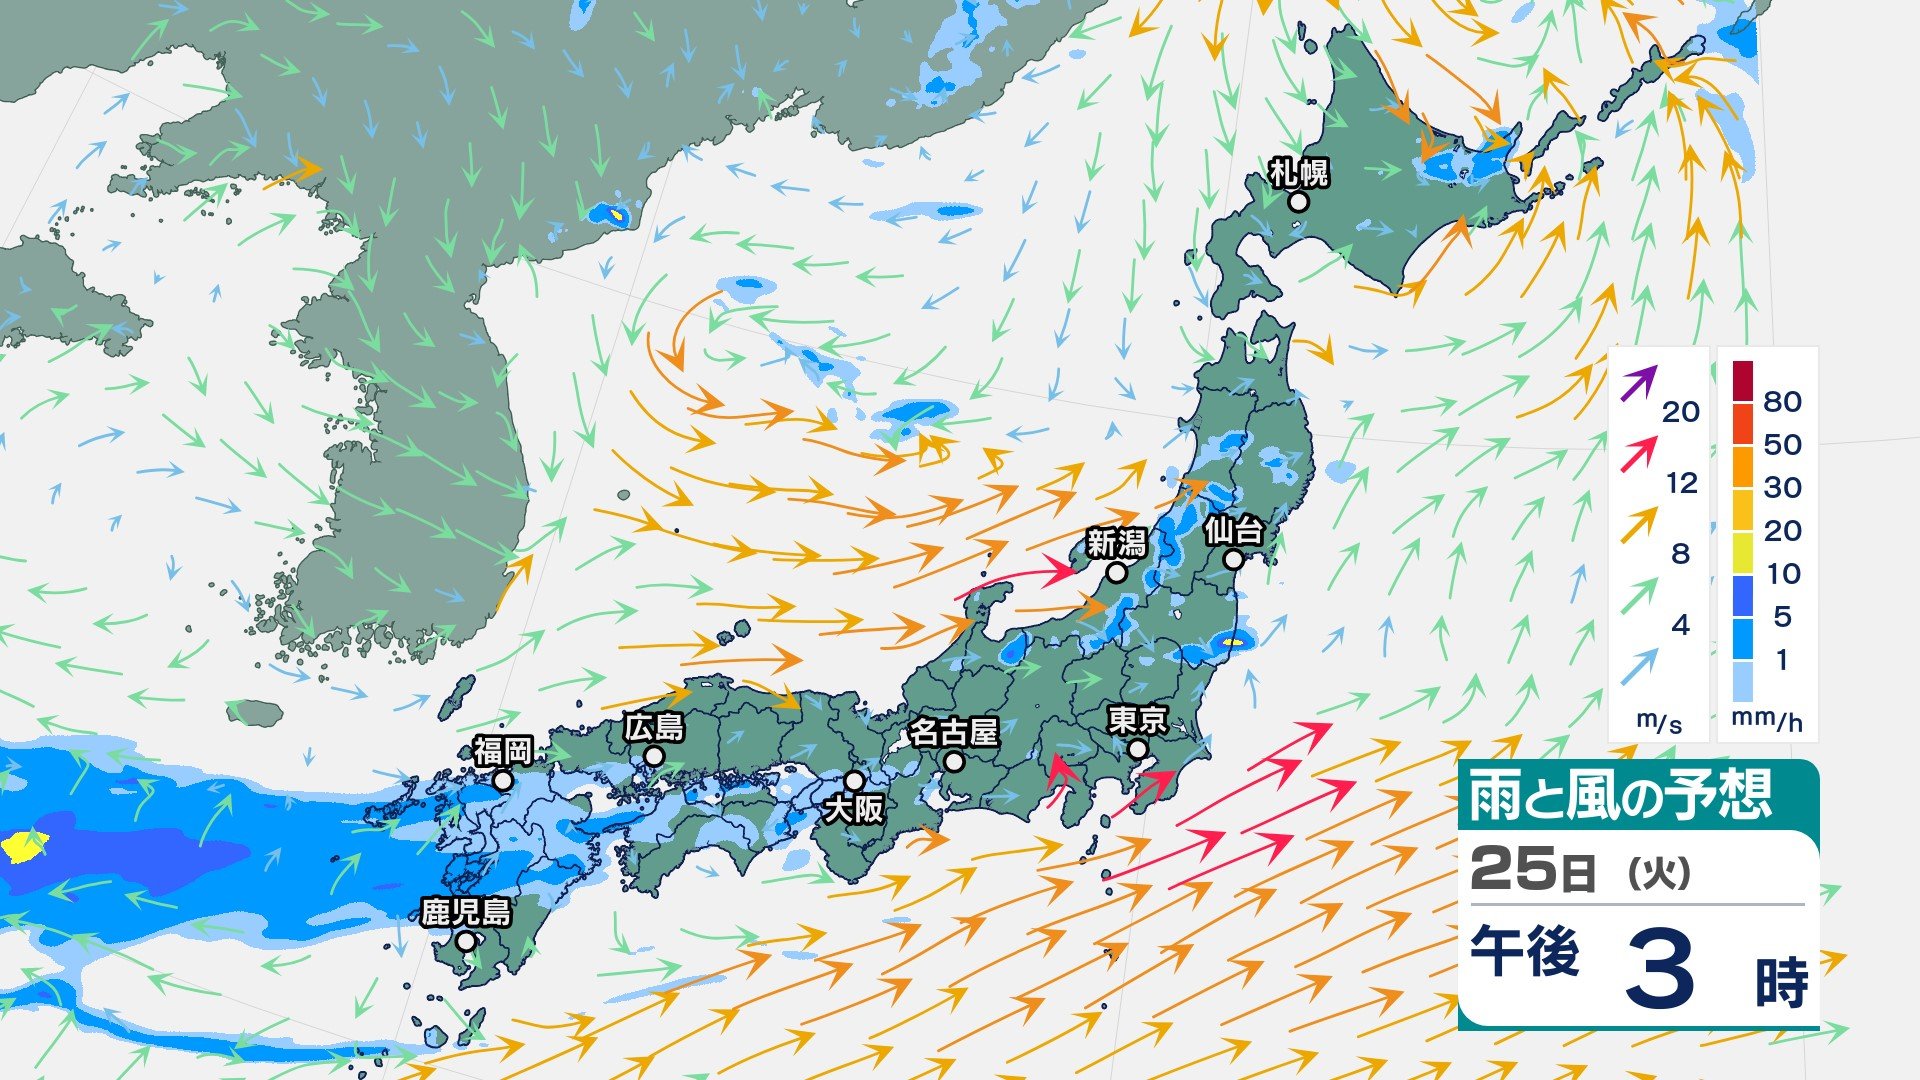 梅雨前線が停滞中　九州や東北で大雨の恐れ　27日(木)から週末にかけて大雨に　太平洋側では激しい雨の可能性も　【今後の雨・風のシミュレーション】